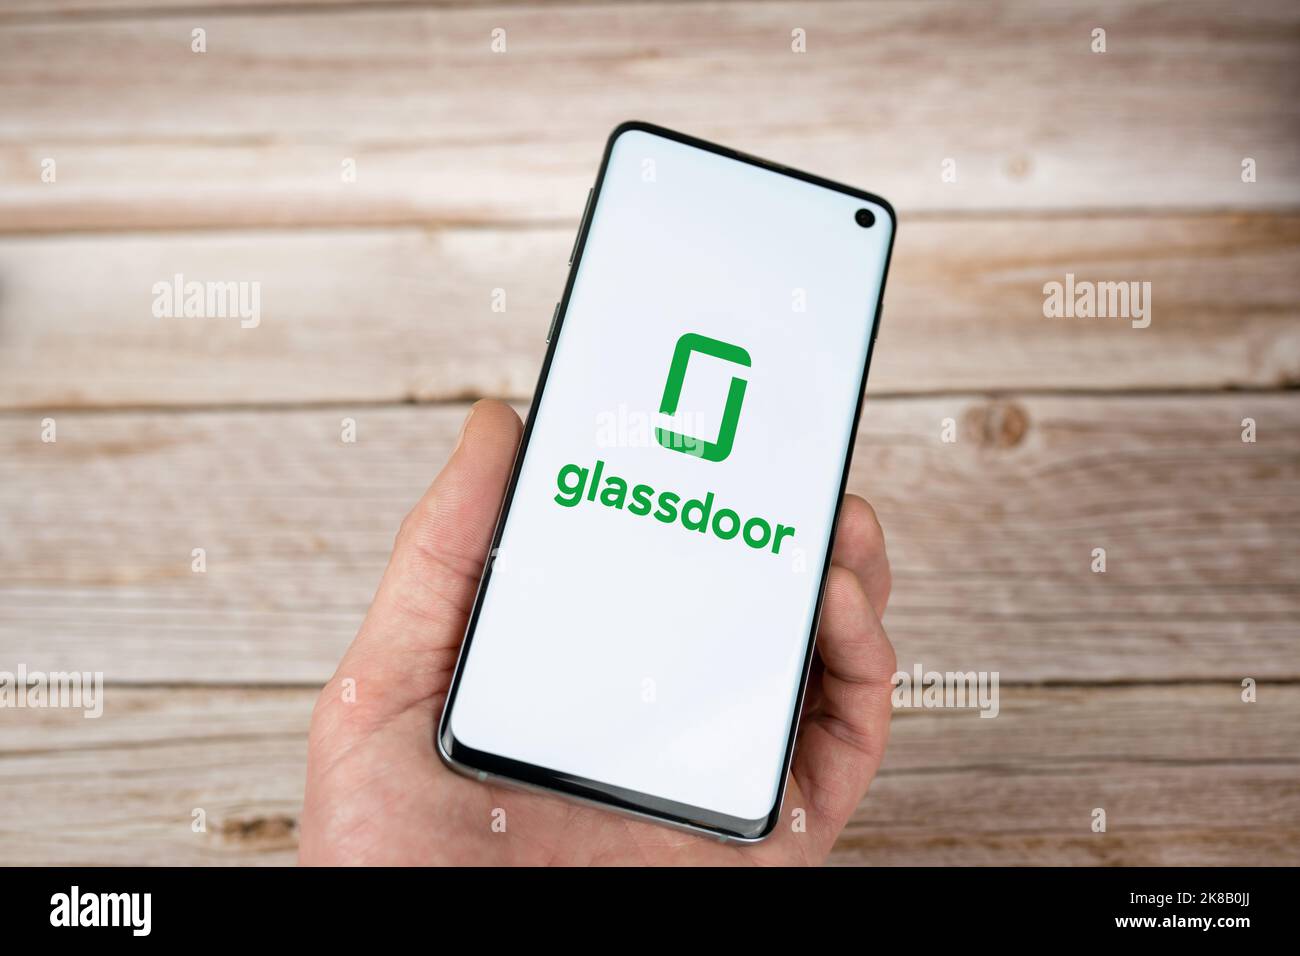 Logo Glassdoor sur l'écran d'un smartphone en main, fond en bois. Application et site Web pour la recherche d'emploi. Swansea, Royaume-Uni - 21 octobre 2022. Banque D'Images